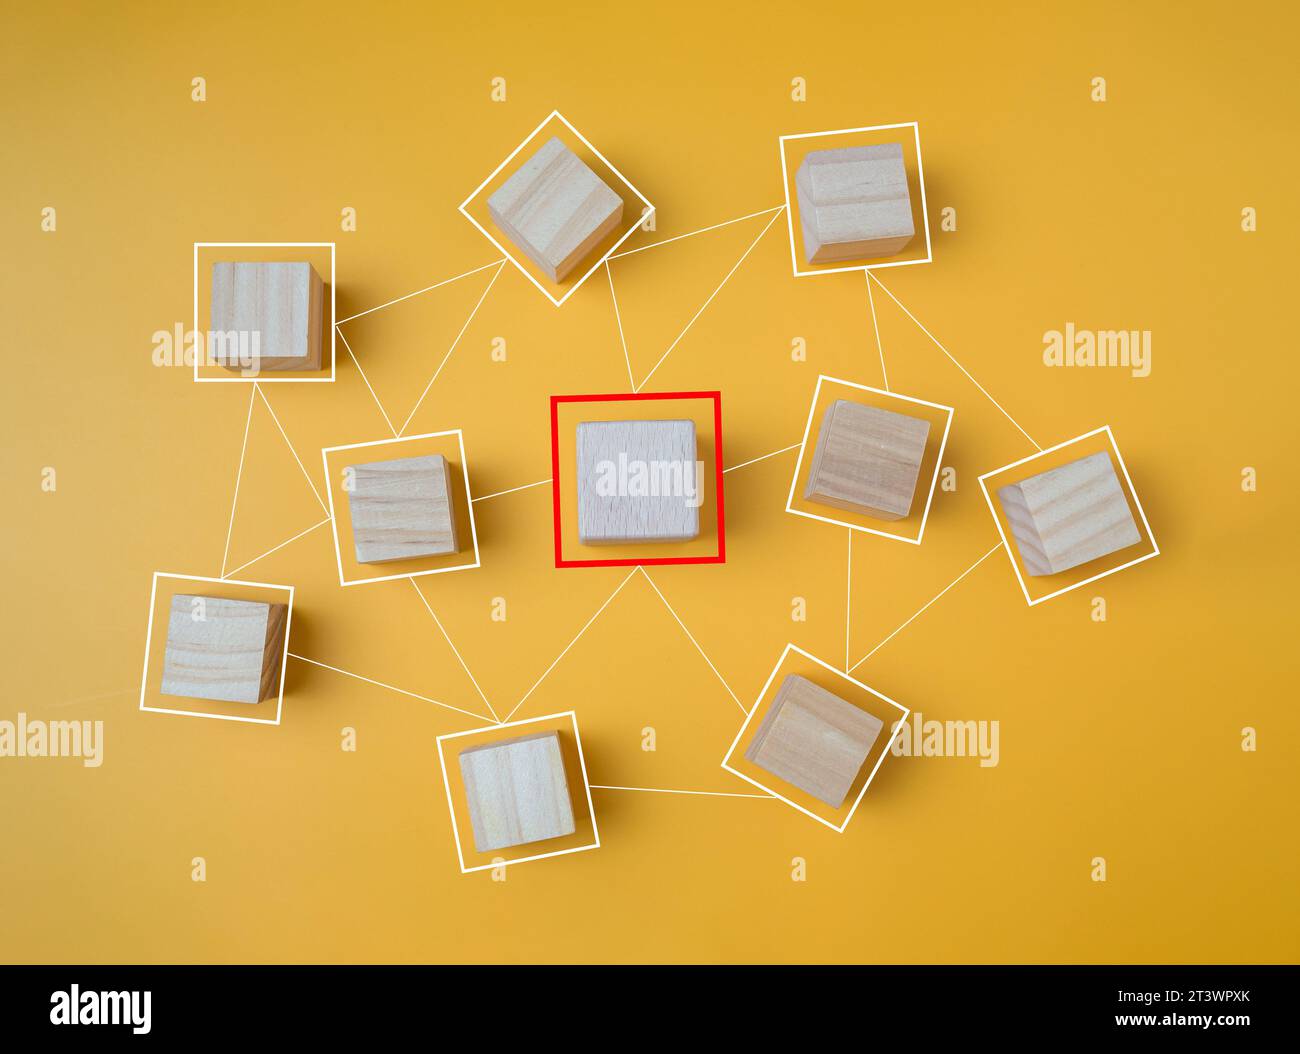 Vernetzte Holzblöcke auf gelbem Hintergrund repräsentieren das Konzept der Kommunikation und Konnektivität von Organisationen und Unternehmensnetzwerken. Stockfoto